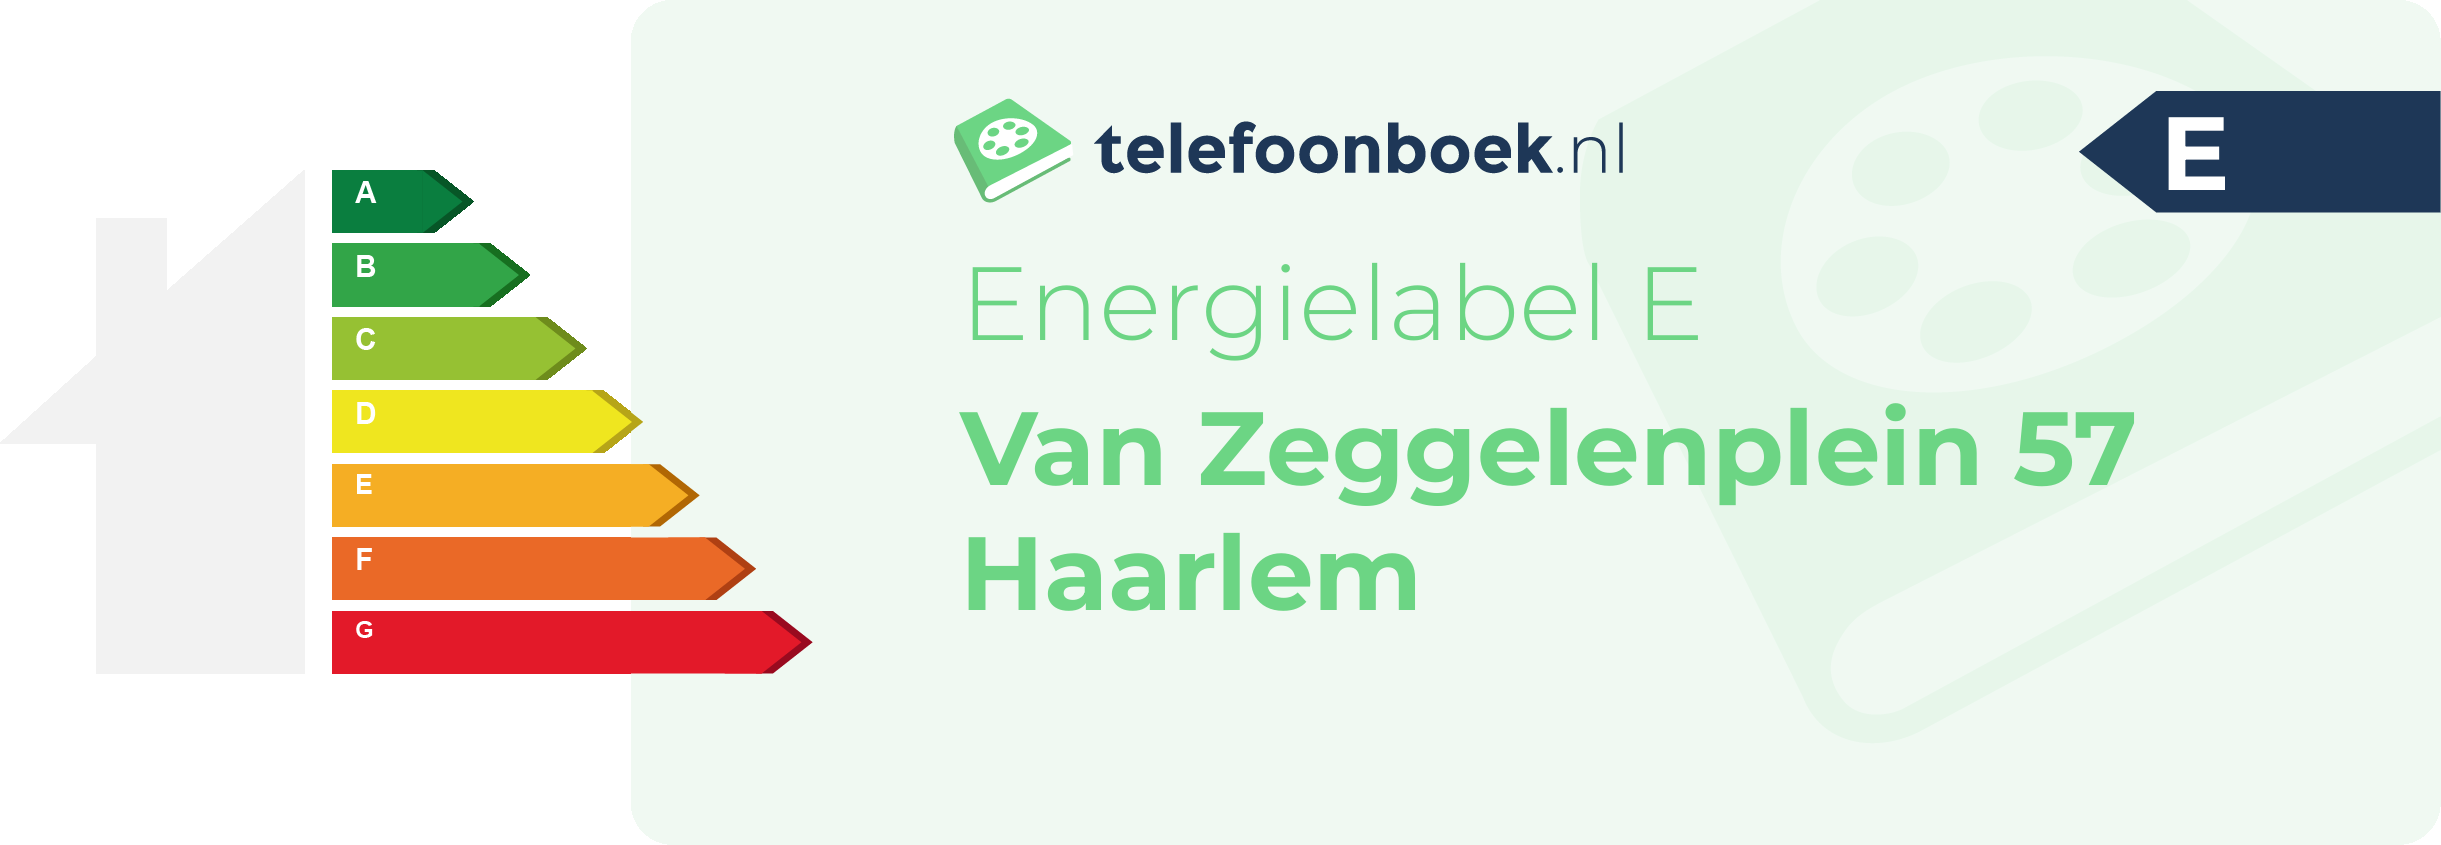 Energielabel Van Zeggelenplein 57 Haarlem